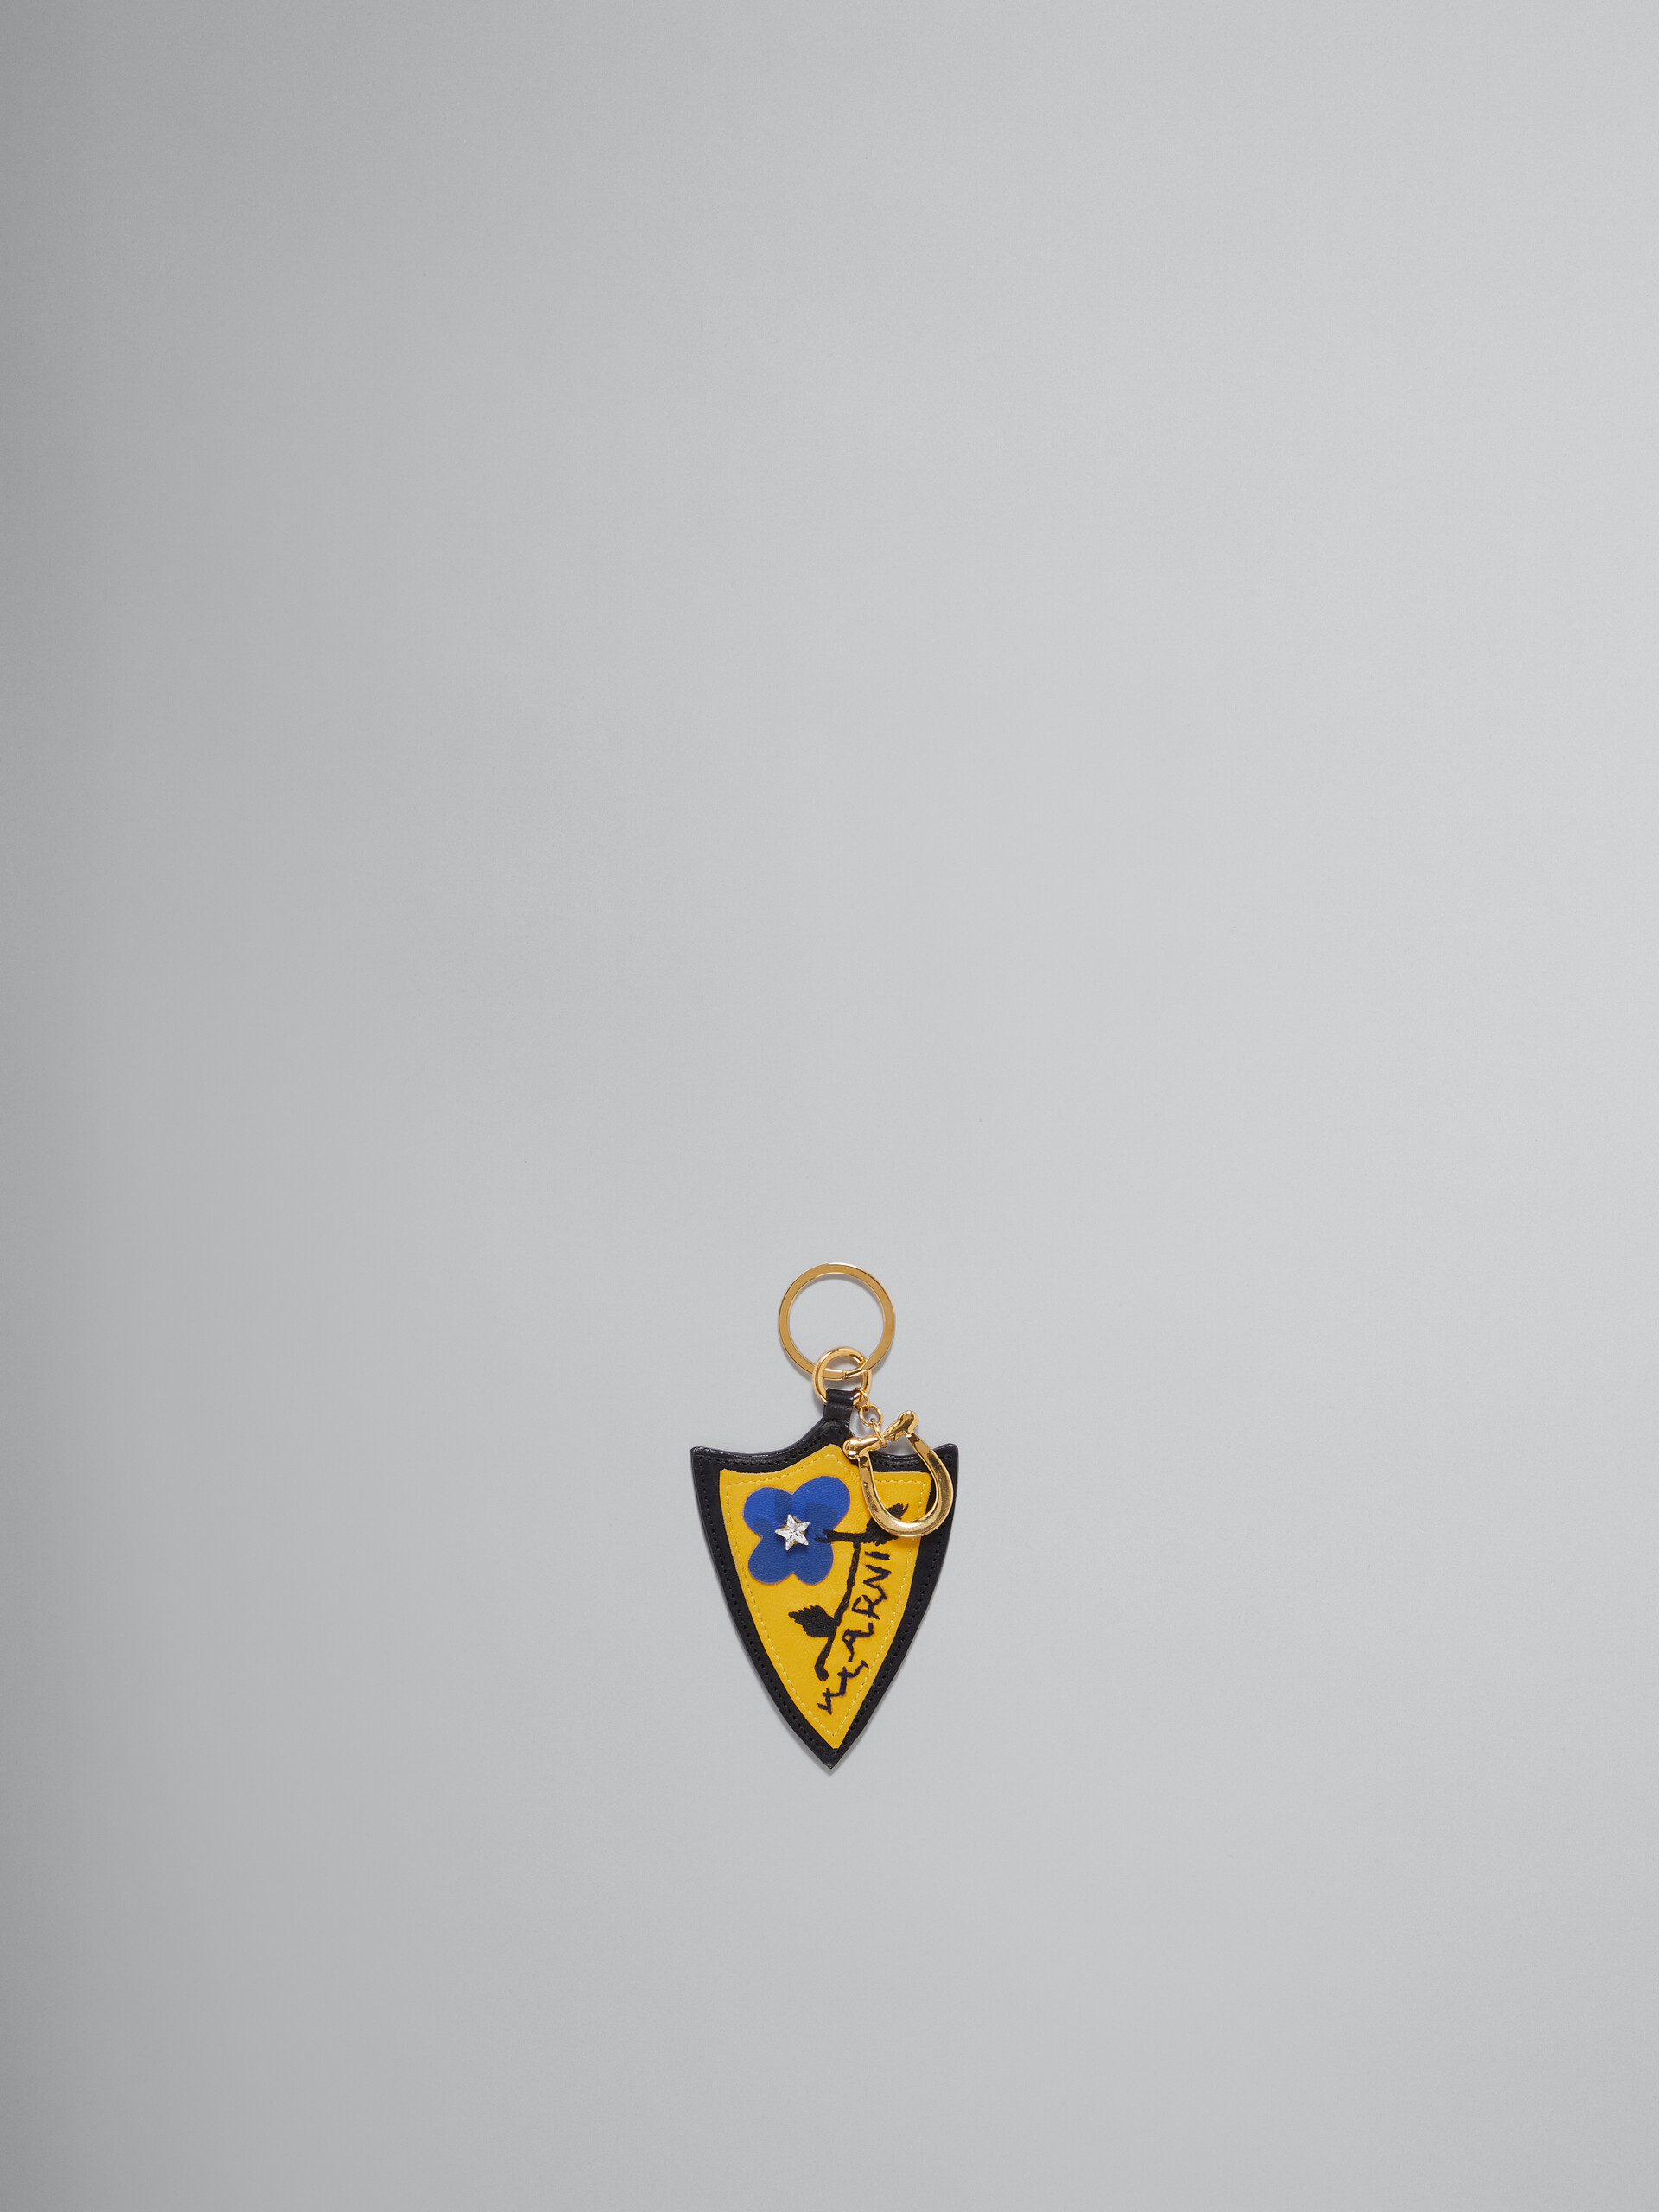 Llavero amarillo y azul de piel con forma de escudo - Llavero - Image 1